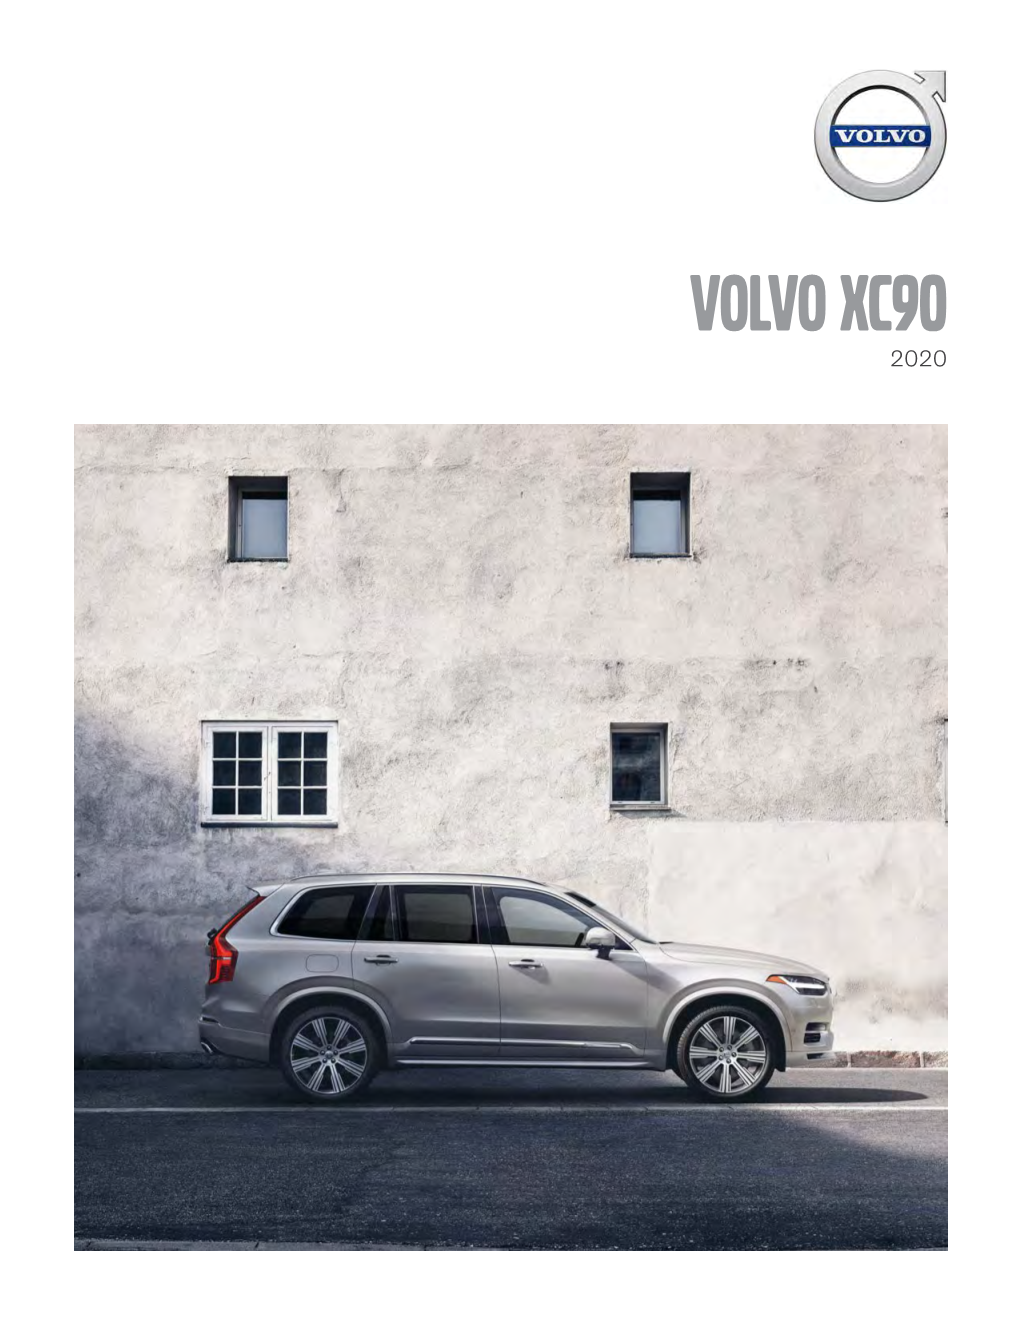 VOLVO XC90 2020 Contents